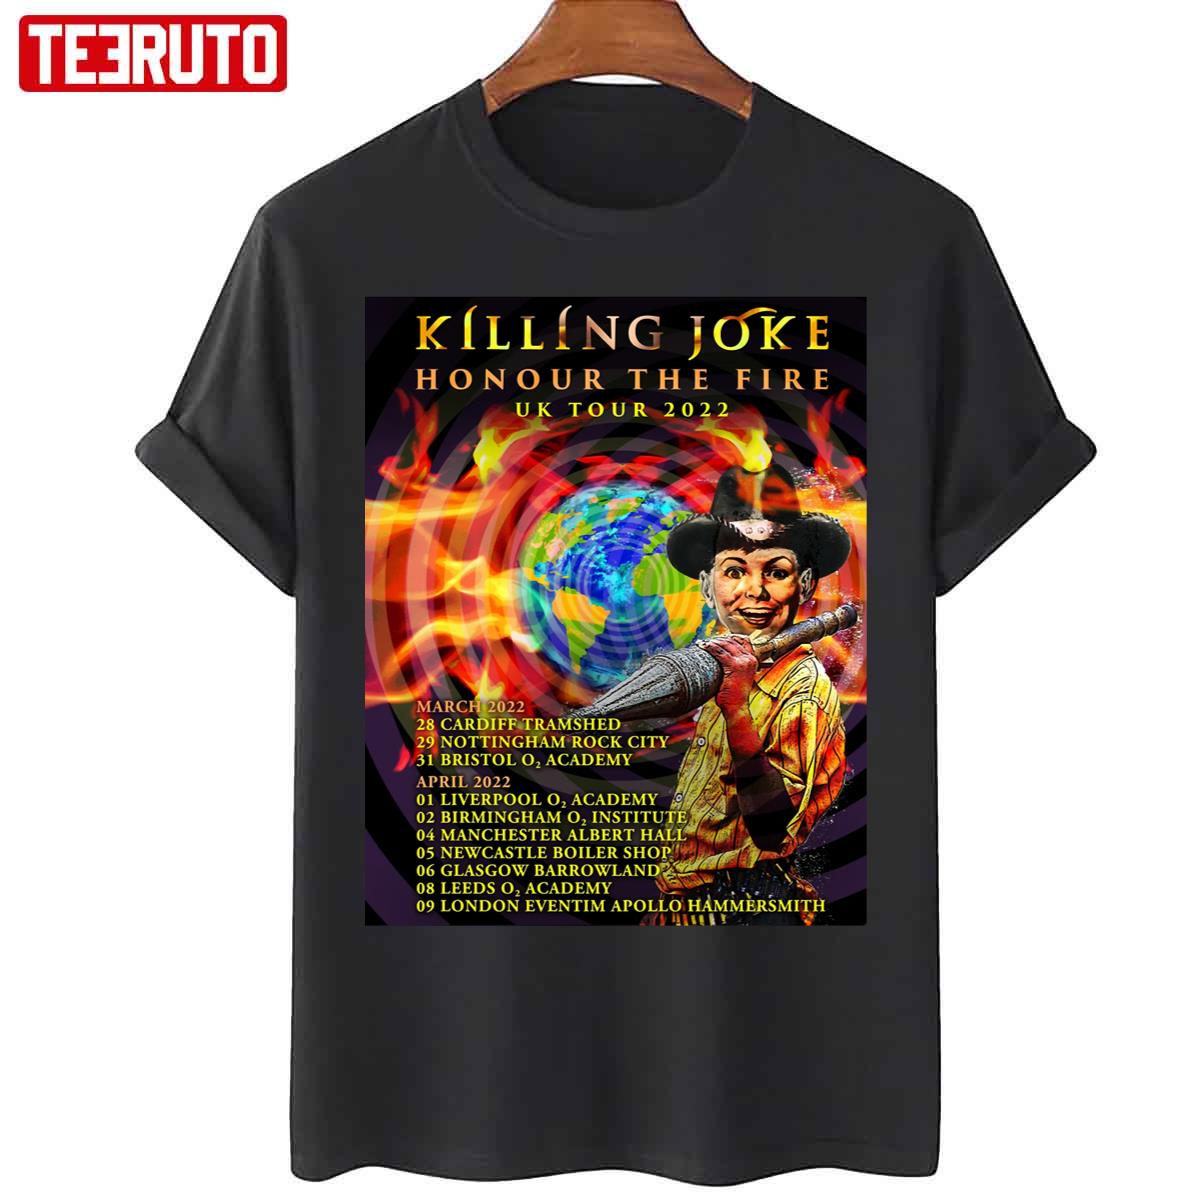 Killing Joke Tour 2022 Honour The Fire Uk Tour 2022 Unisex T-Shirt